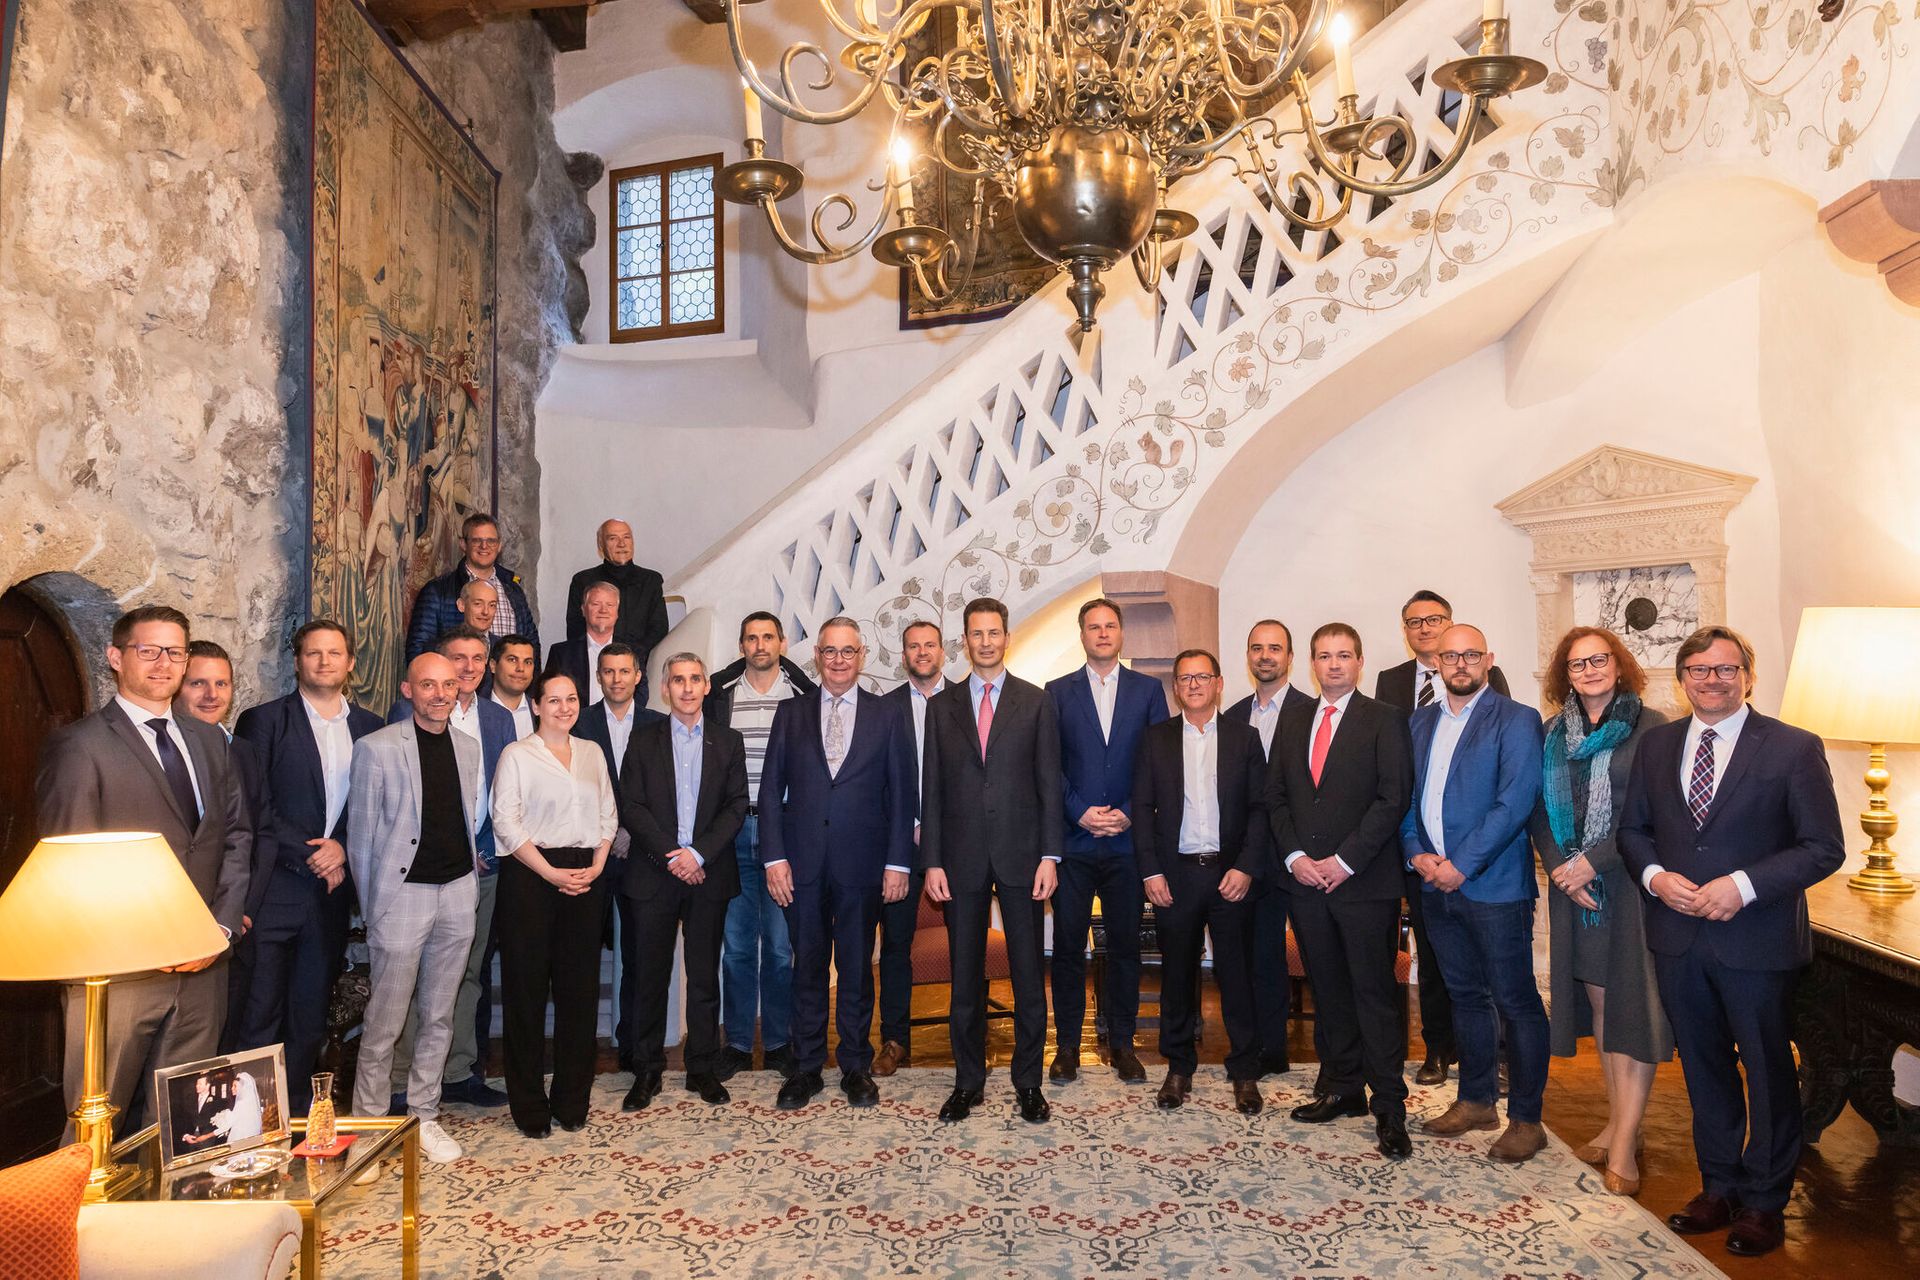 Digital-liechtenstein-li girişiminin XNUMX yönetim kurulu üyesi ile Veliaht Prens Alois von und zu Liechtenstein'ın Vaduz Kalesi'ndeki toplantısı